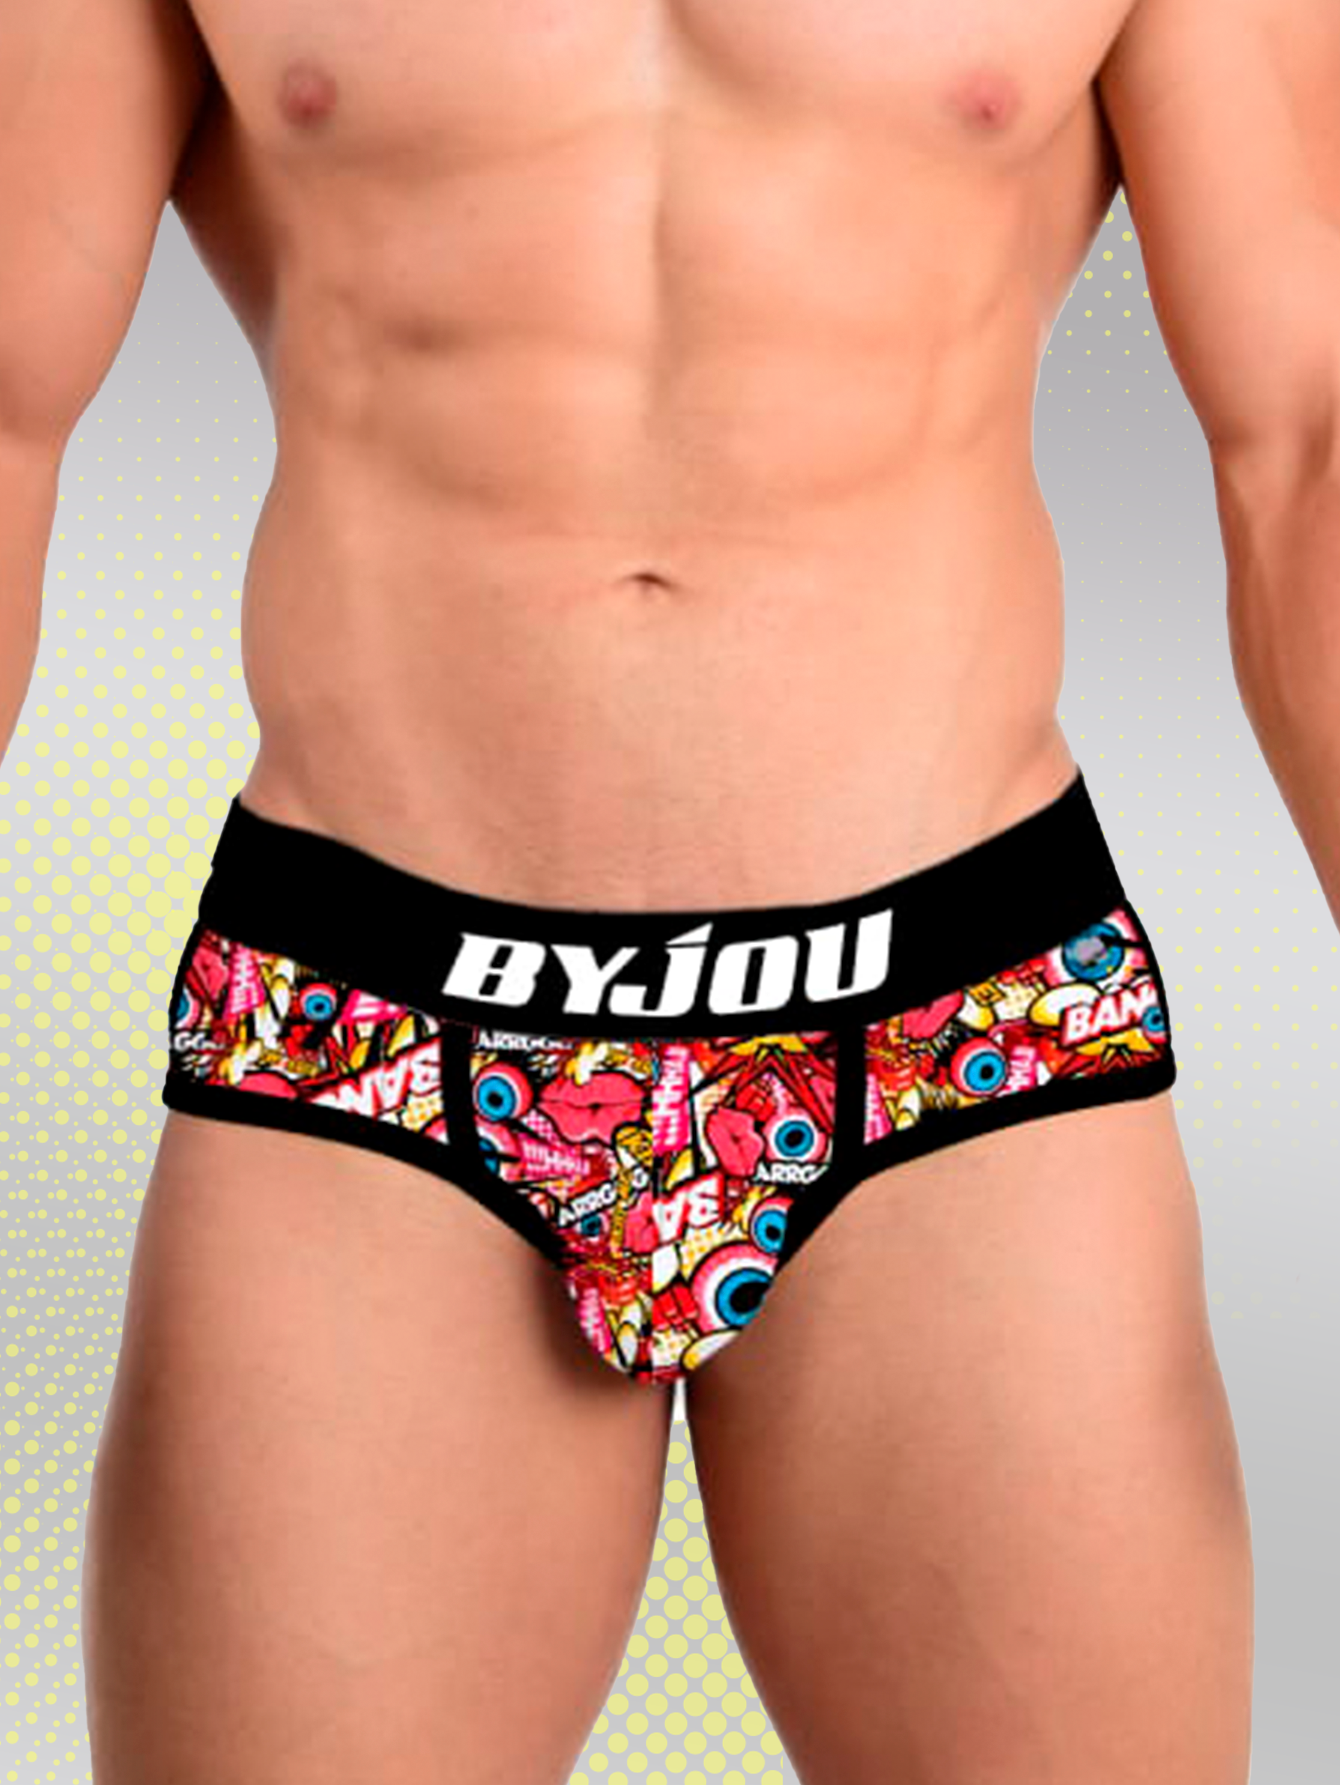 Boxer Brief Men Nautico  Byjou Underwear Calzon BNAUMX025